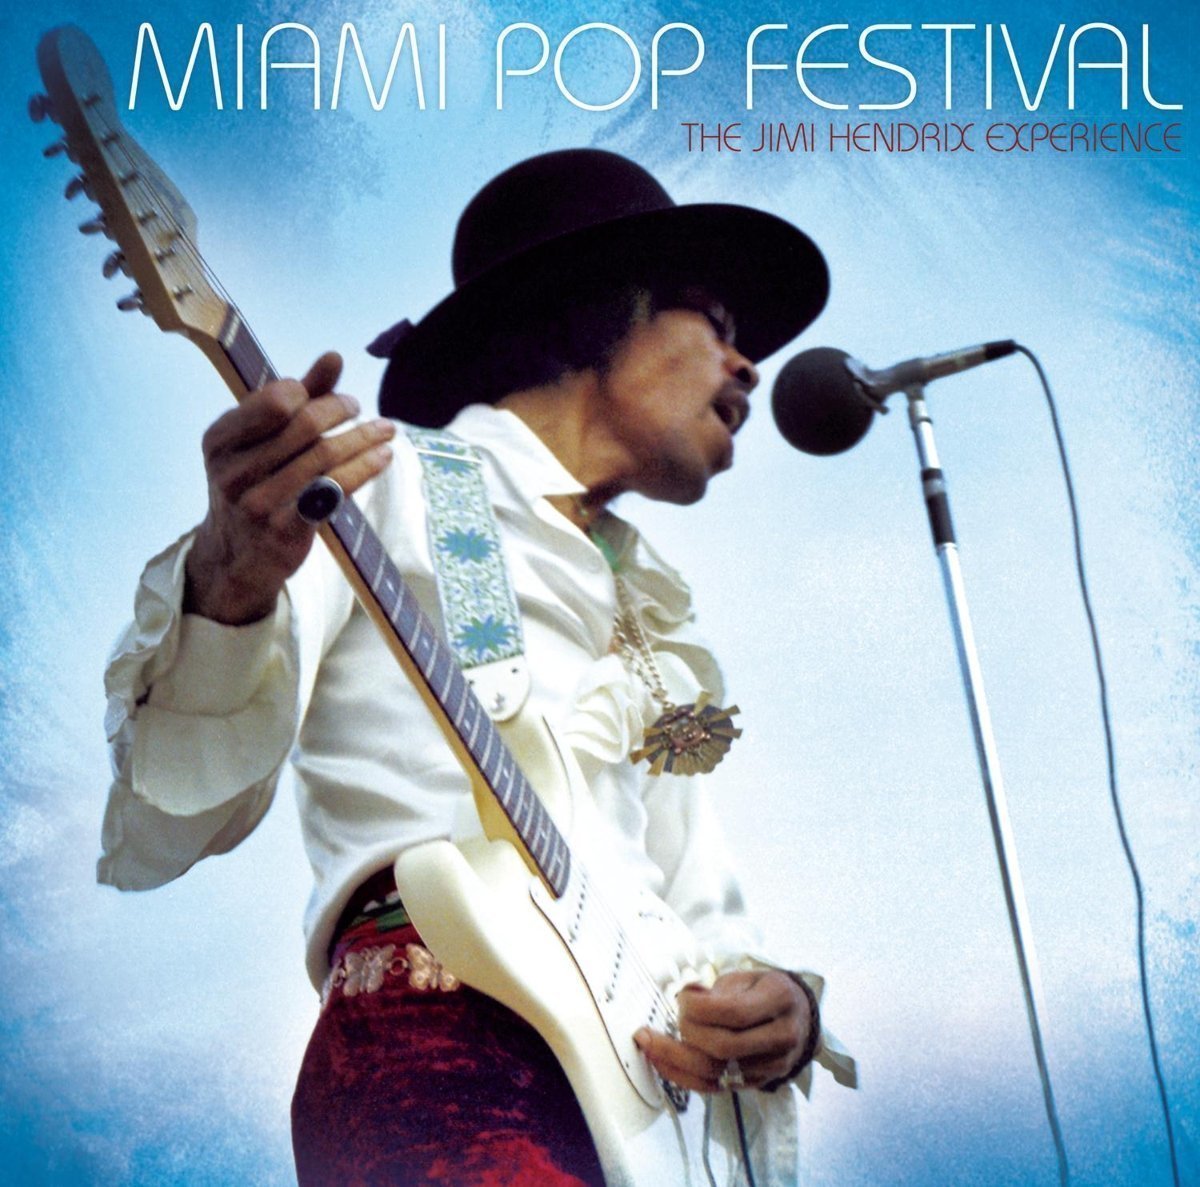 Disco de vinilo The Jimi Hendrix Experience Miami Pop Festival (2 LP)